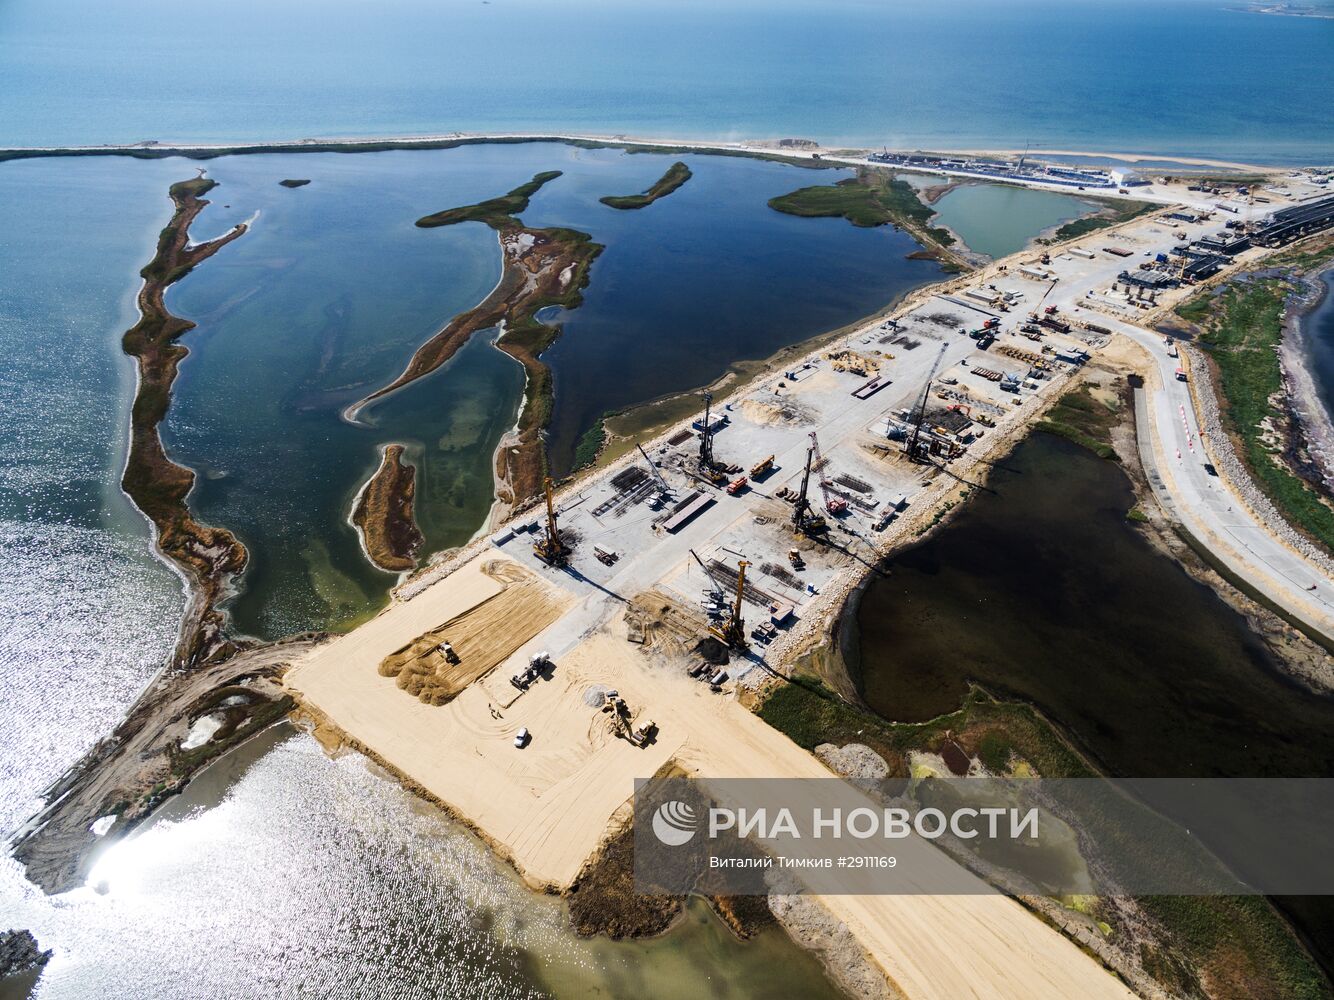 Строительная площадка новой трассы в Крым